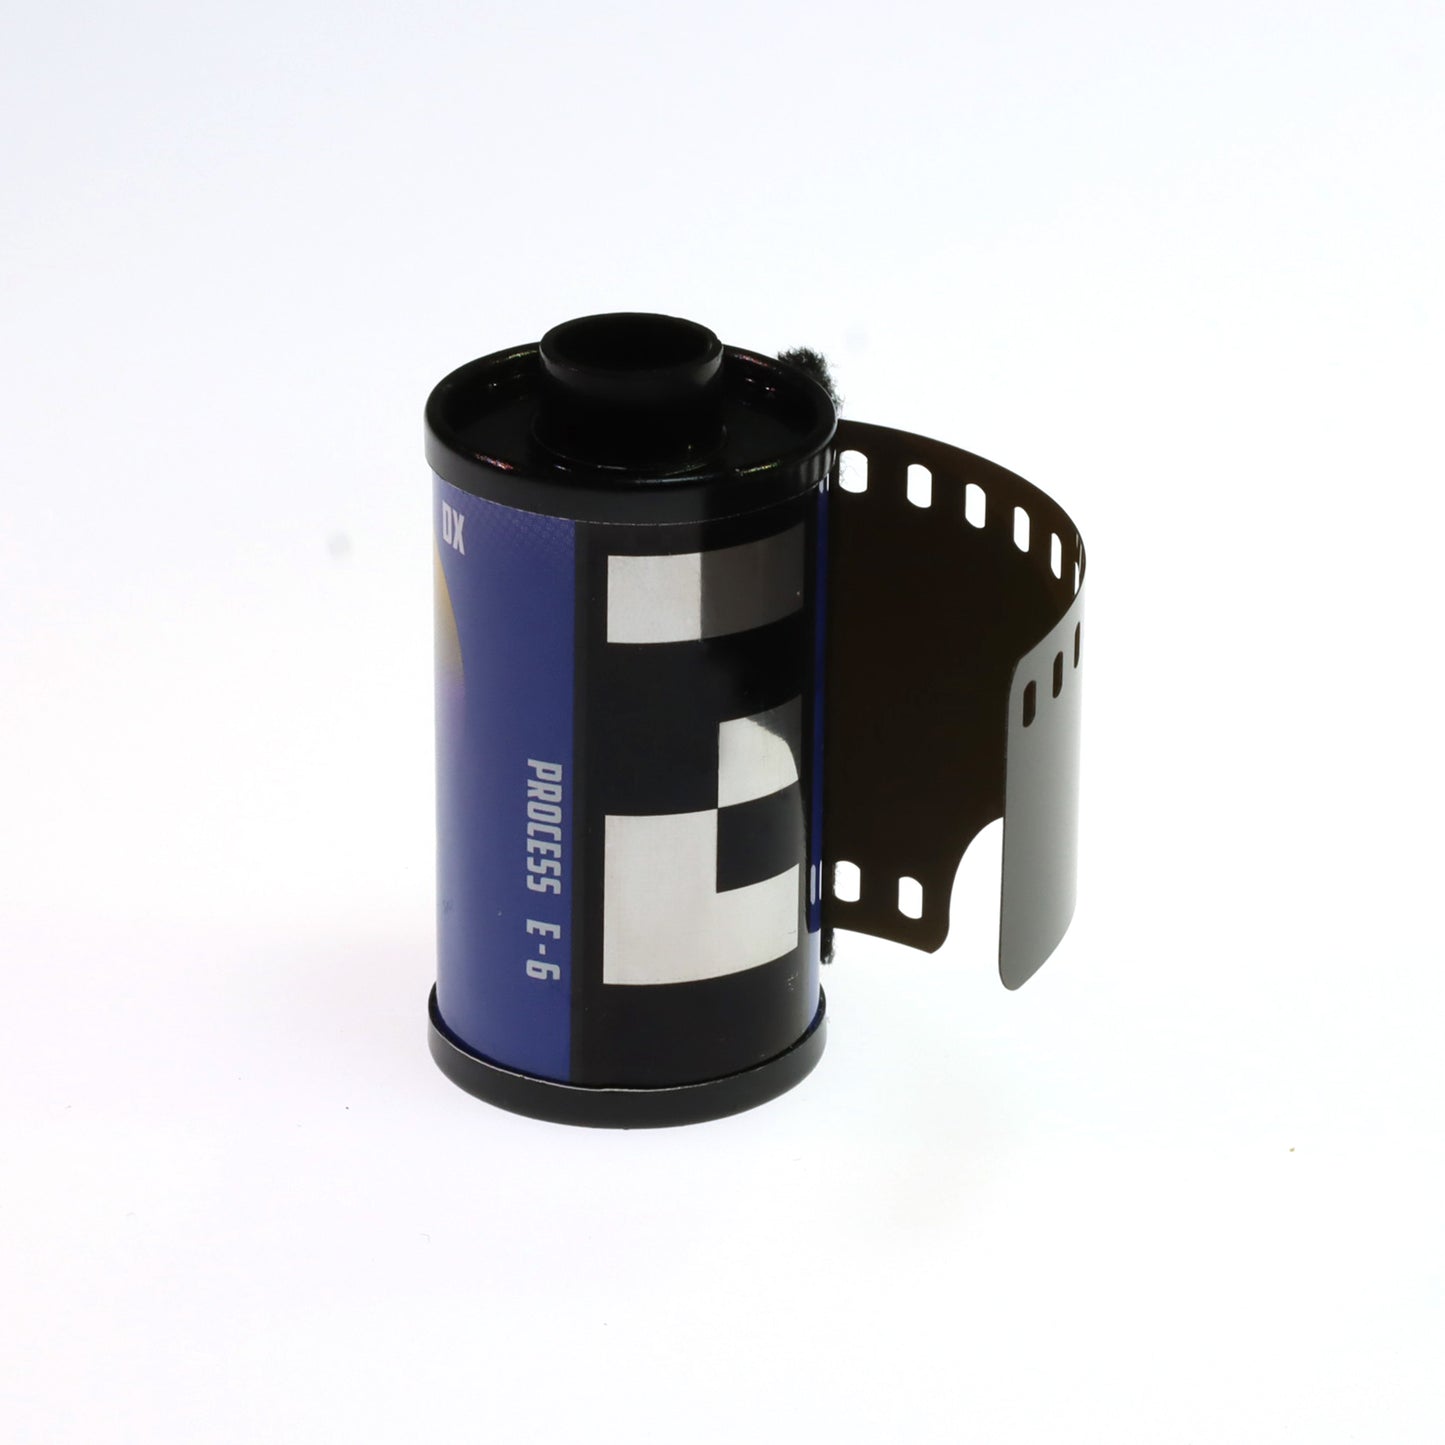 Reflx Lab 100R 35mm Color Reversal Film 36EXP